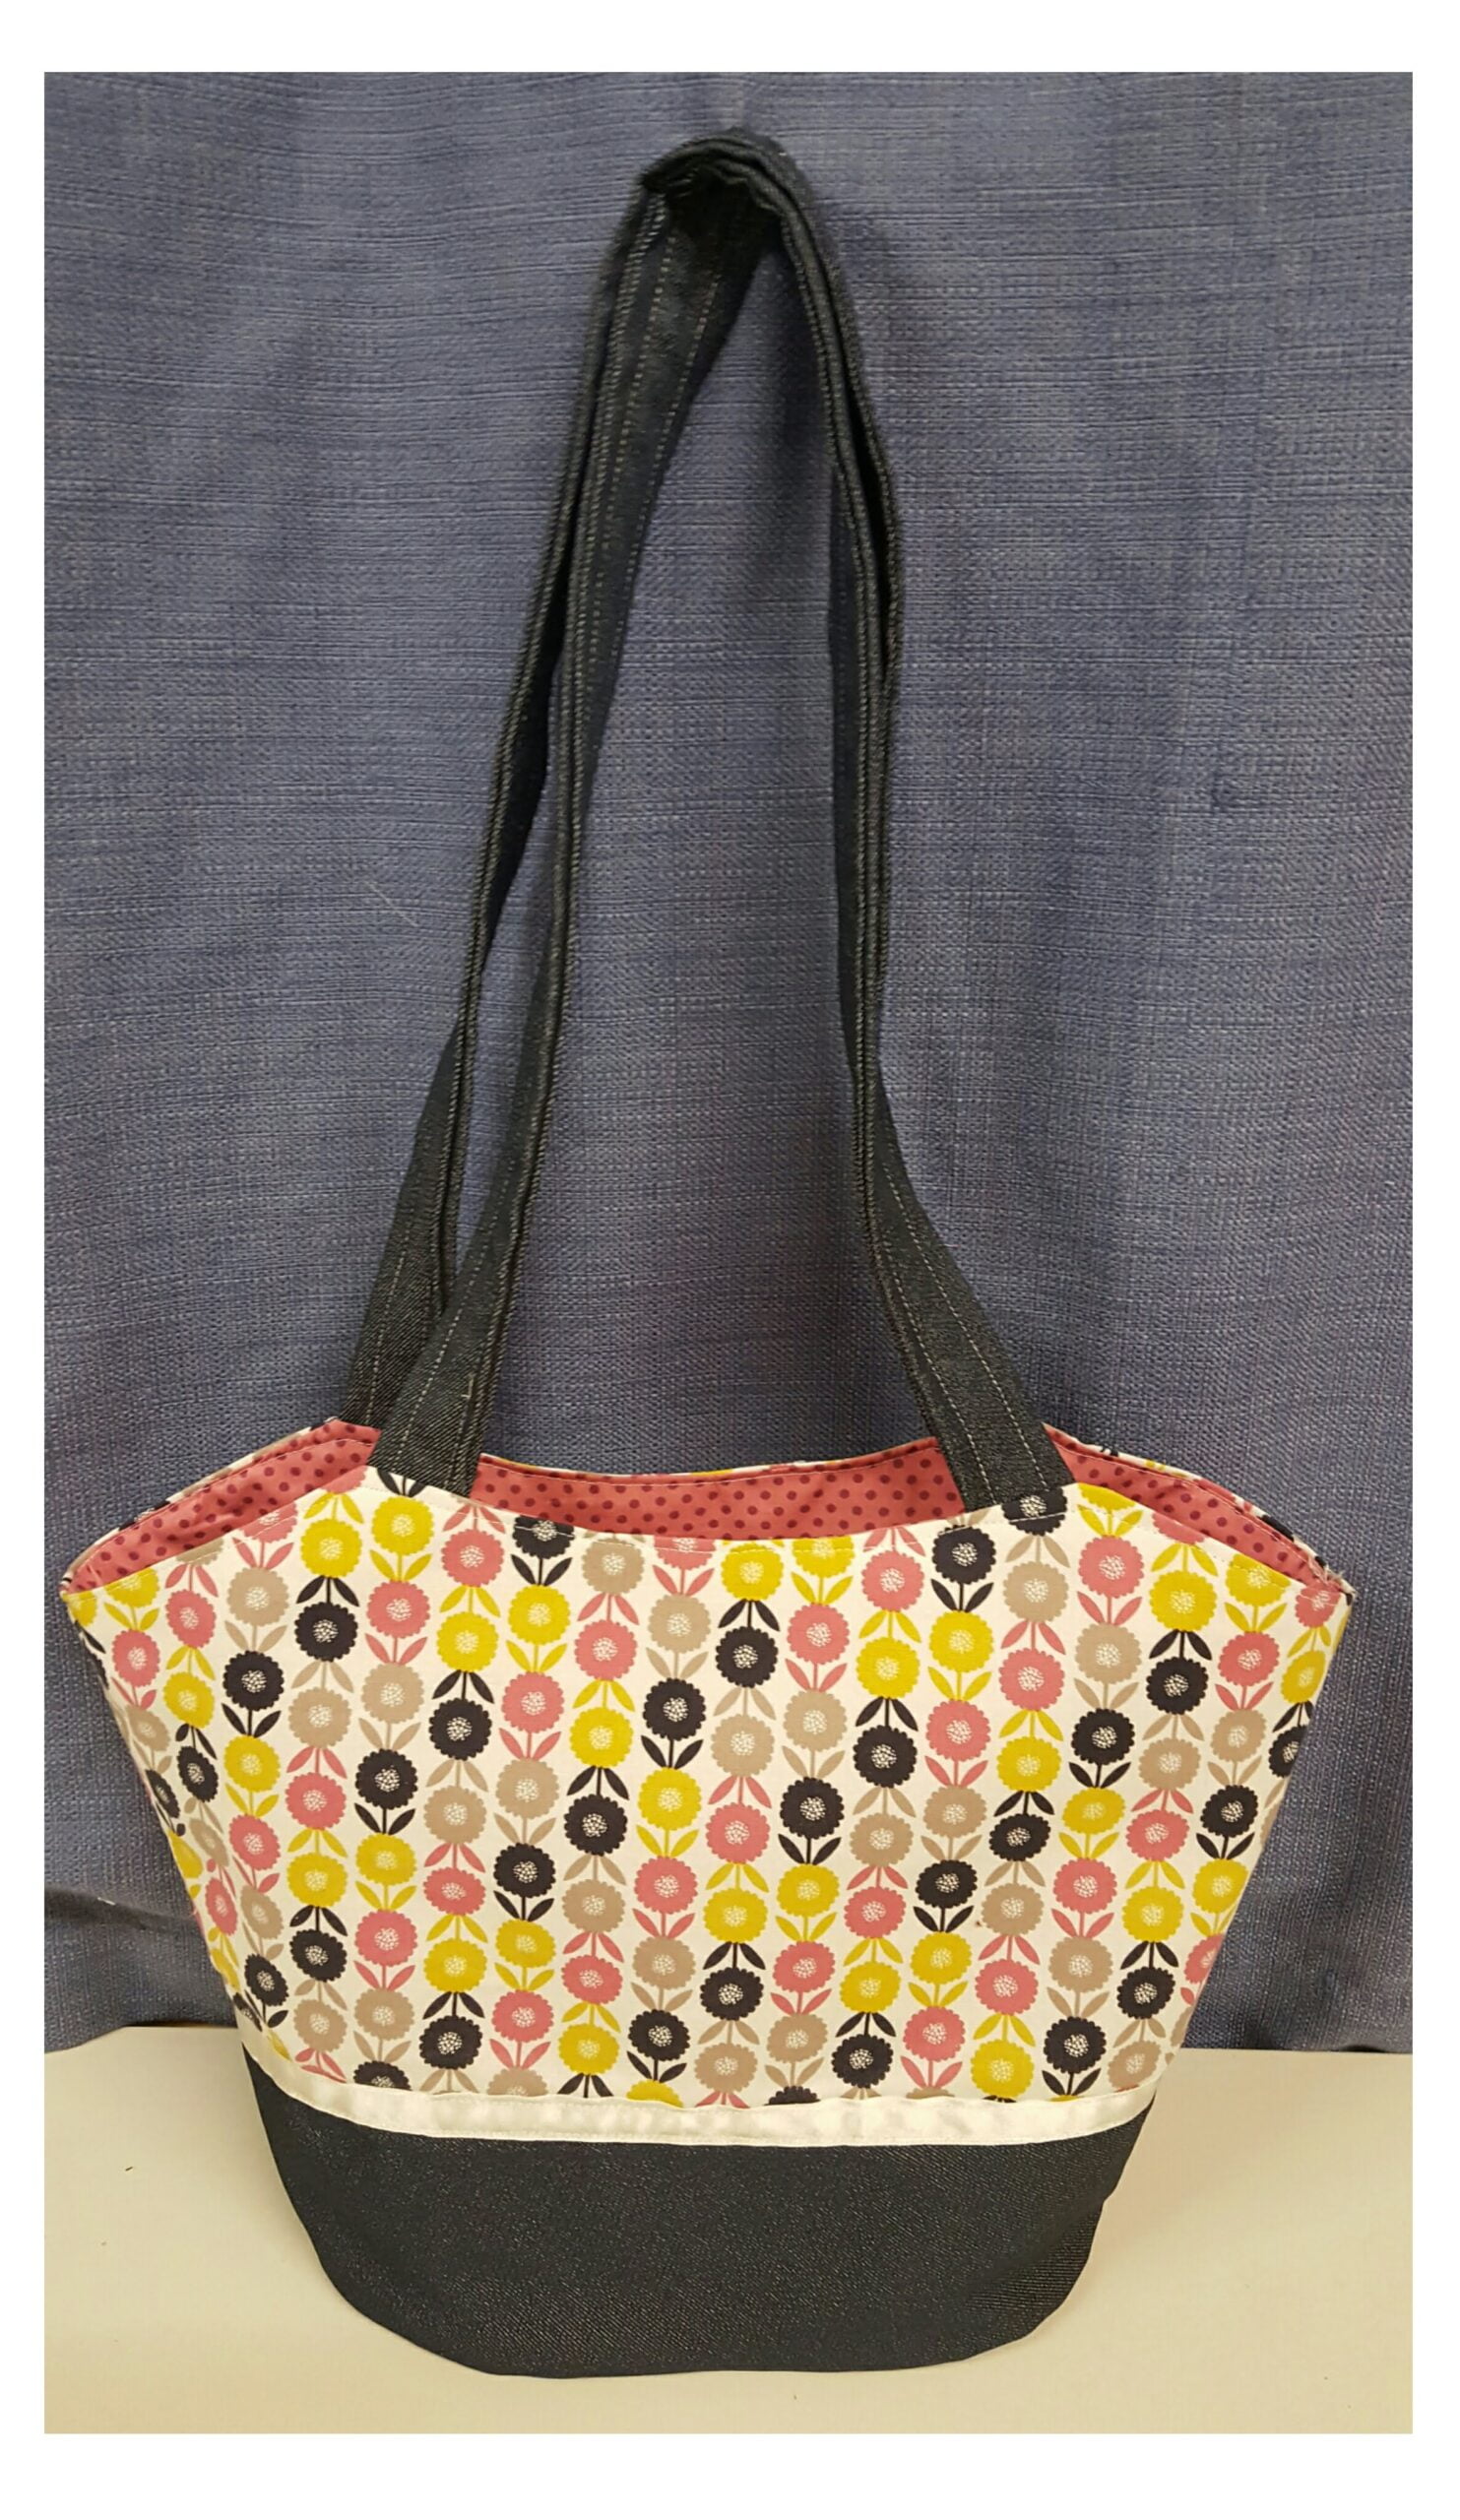 7 Day Challenge: Colorful Crochet Bag Sampler